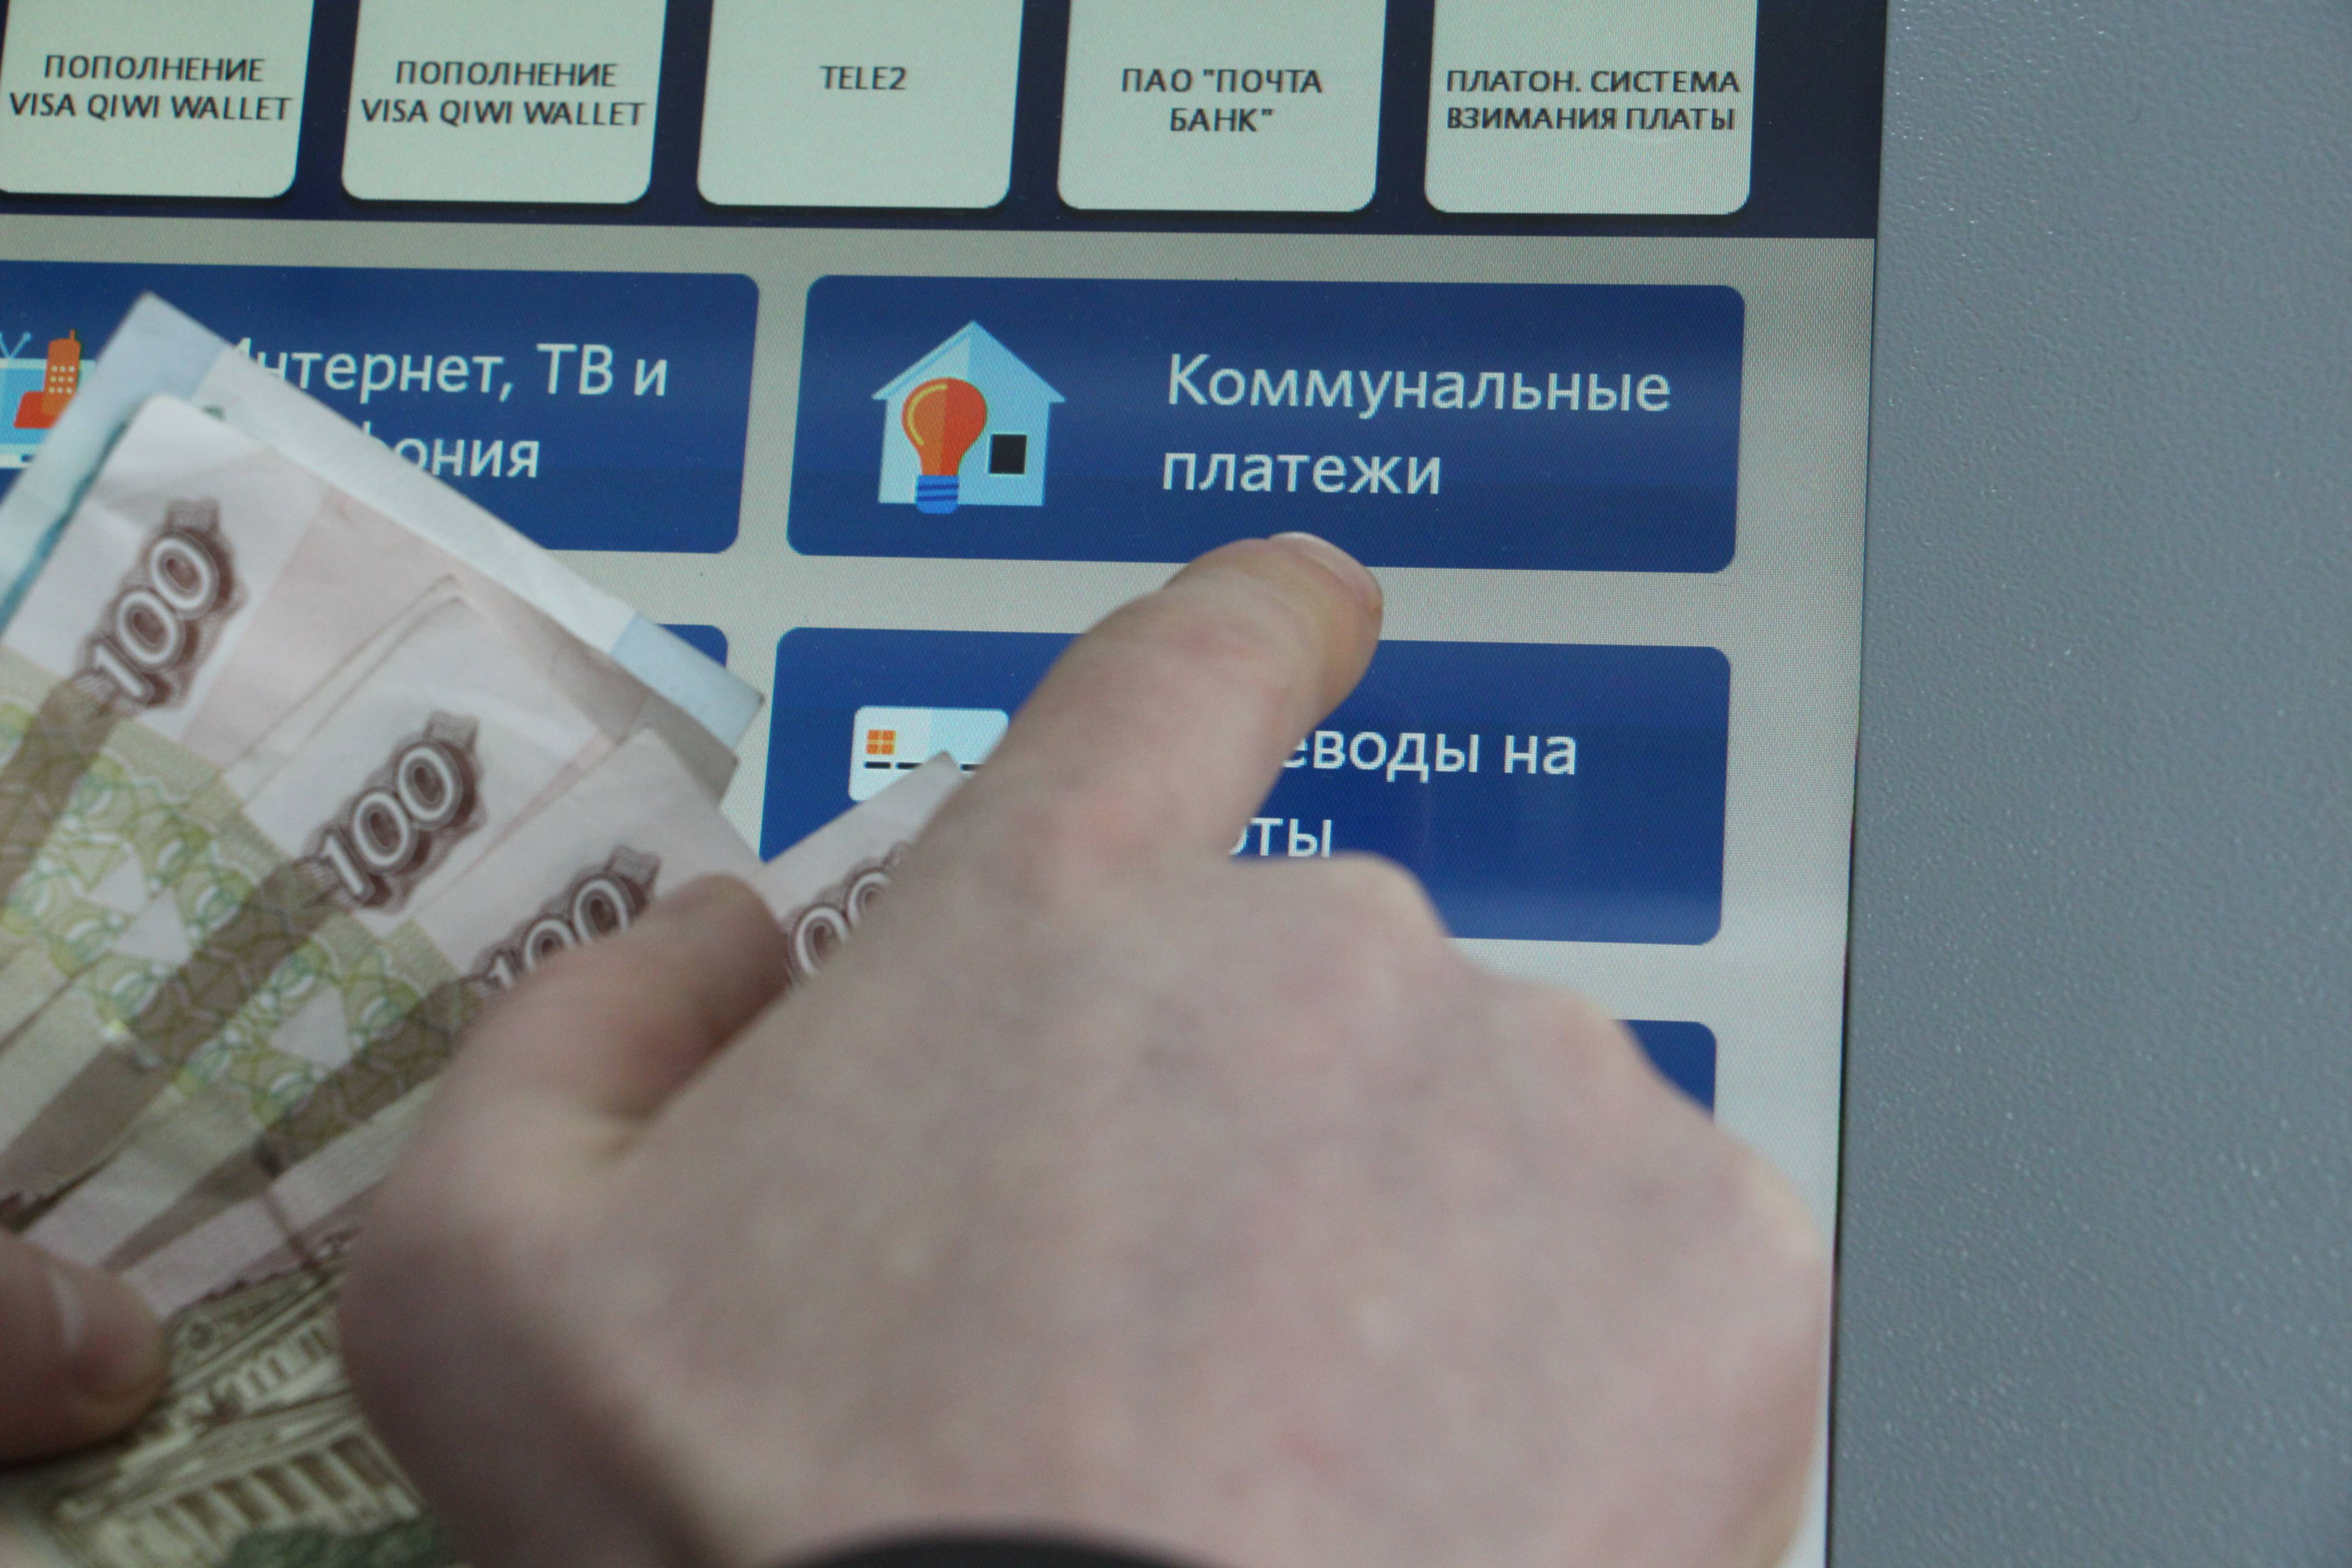 Депутаты отменяют комиссию за платежи по жку. банки против